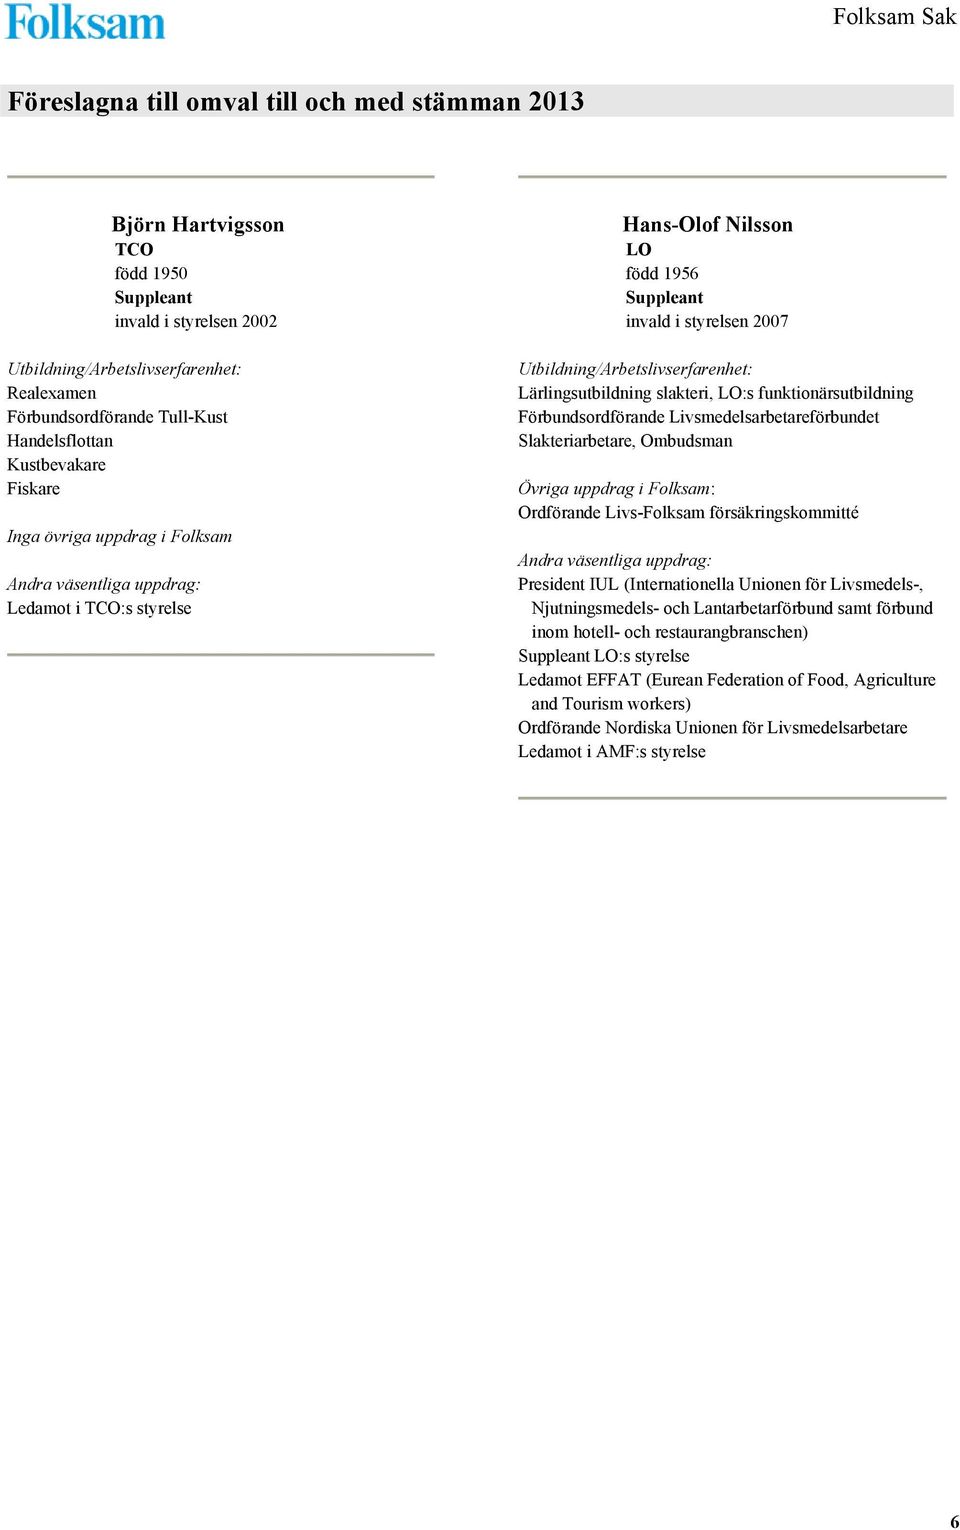 Ombudsman Övriga uppdrag i Folksam: Ordförande Livs-Folksam försäkringskommitté President IUL (Internationella Unionen för Livsmedels-, Njutningsmedels- och Lantarbetarförbund samt